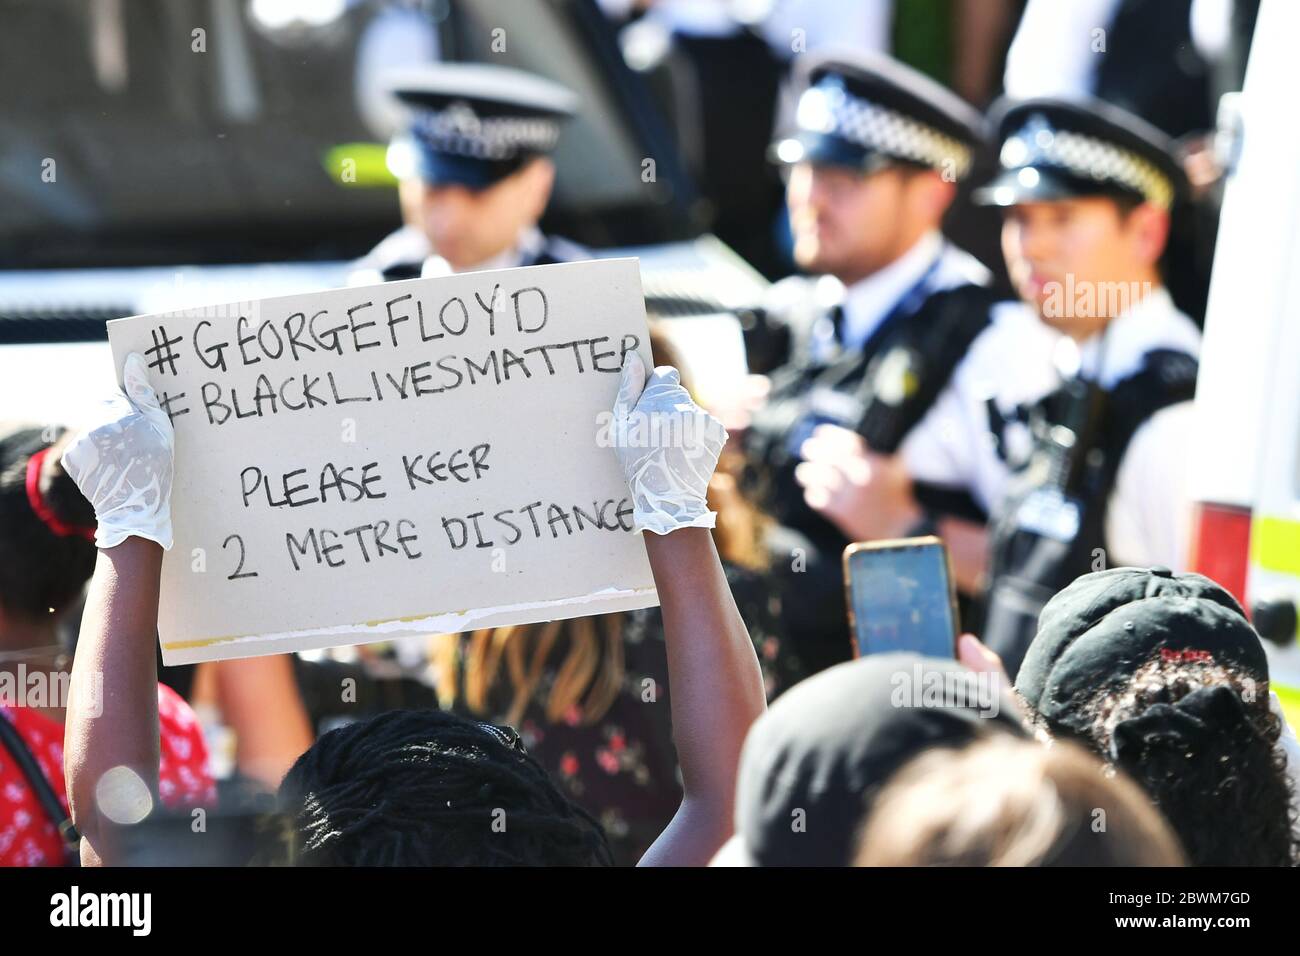 Ein Demonstrator hält ein Schild hoch, das die Menschen an soziale Distanz während eines Black Lives Matter Protests vor der US-Botschaft in London erinnert. Der Protest folgt dem Tod von George Floyd in Minneapolis, US, diese Woche, die einen Polizeibeamten gesehen hat, der mit Mord dritten Grades aufgeladen wird. Stockfoto